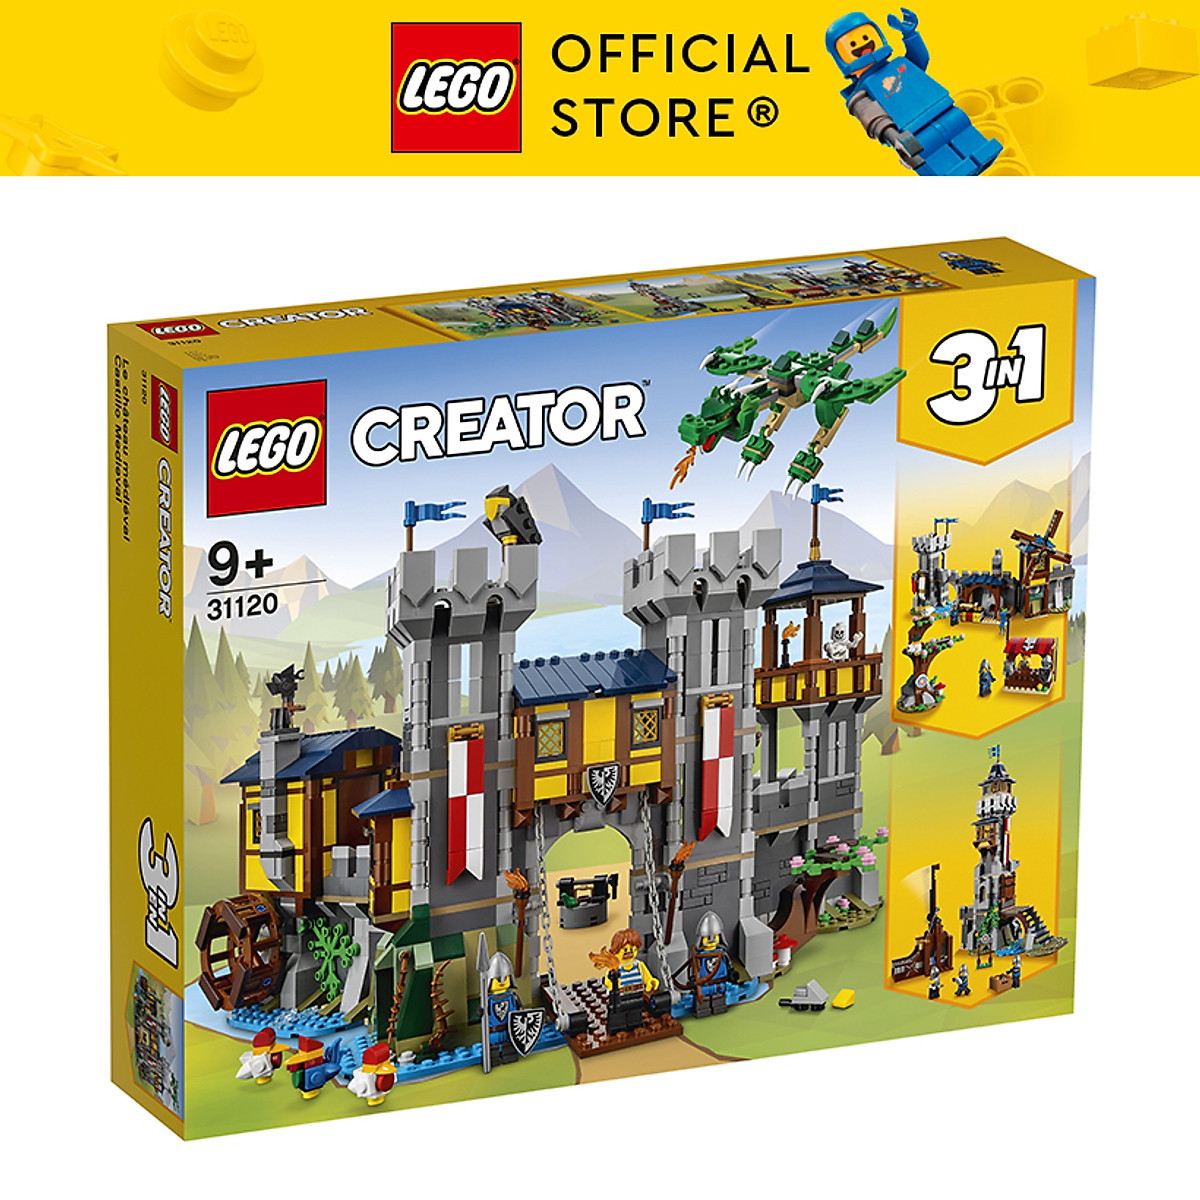 LEGO Creator 31120 Lâu đài thời trung cổ (1426 chi tiết) - Lắp ...